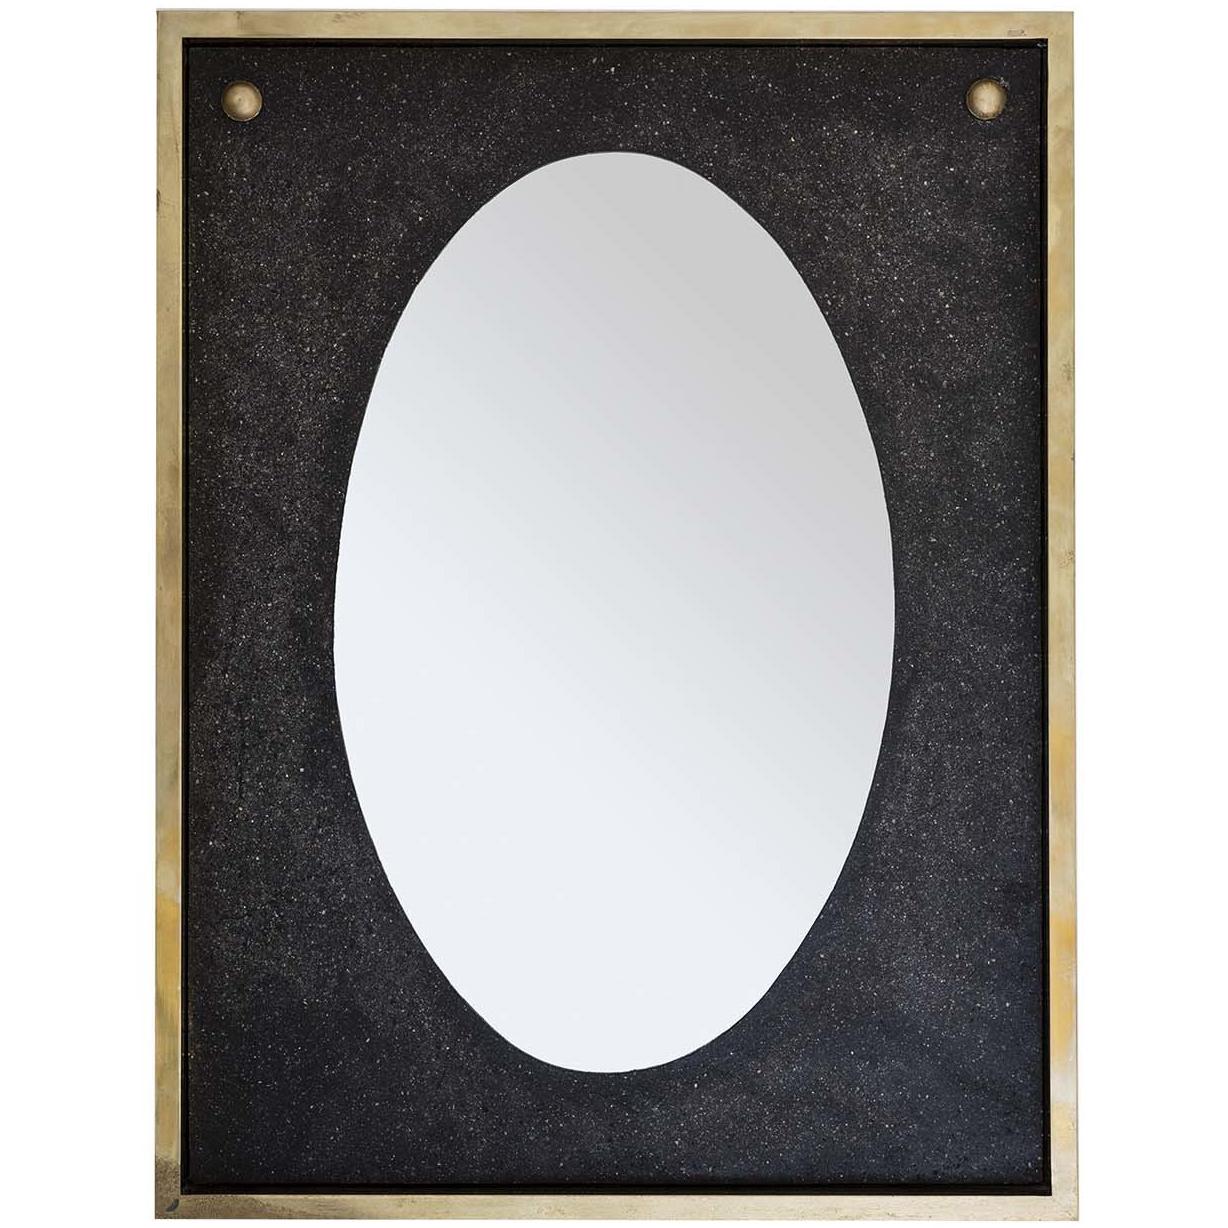 Ubi Oval Wall Mirror